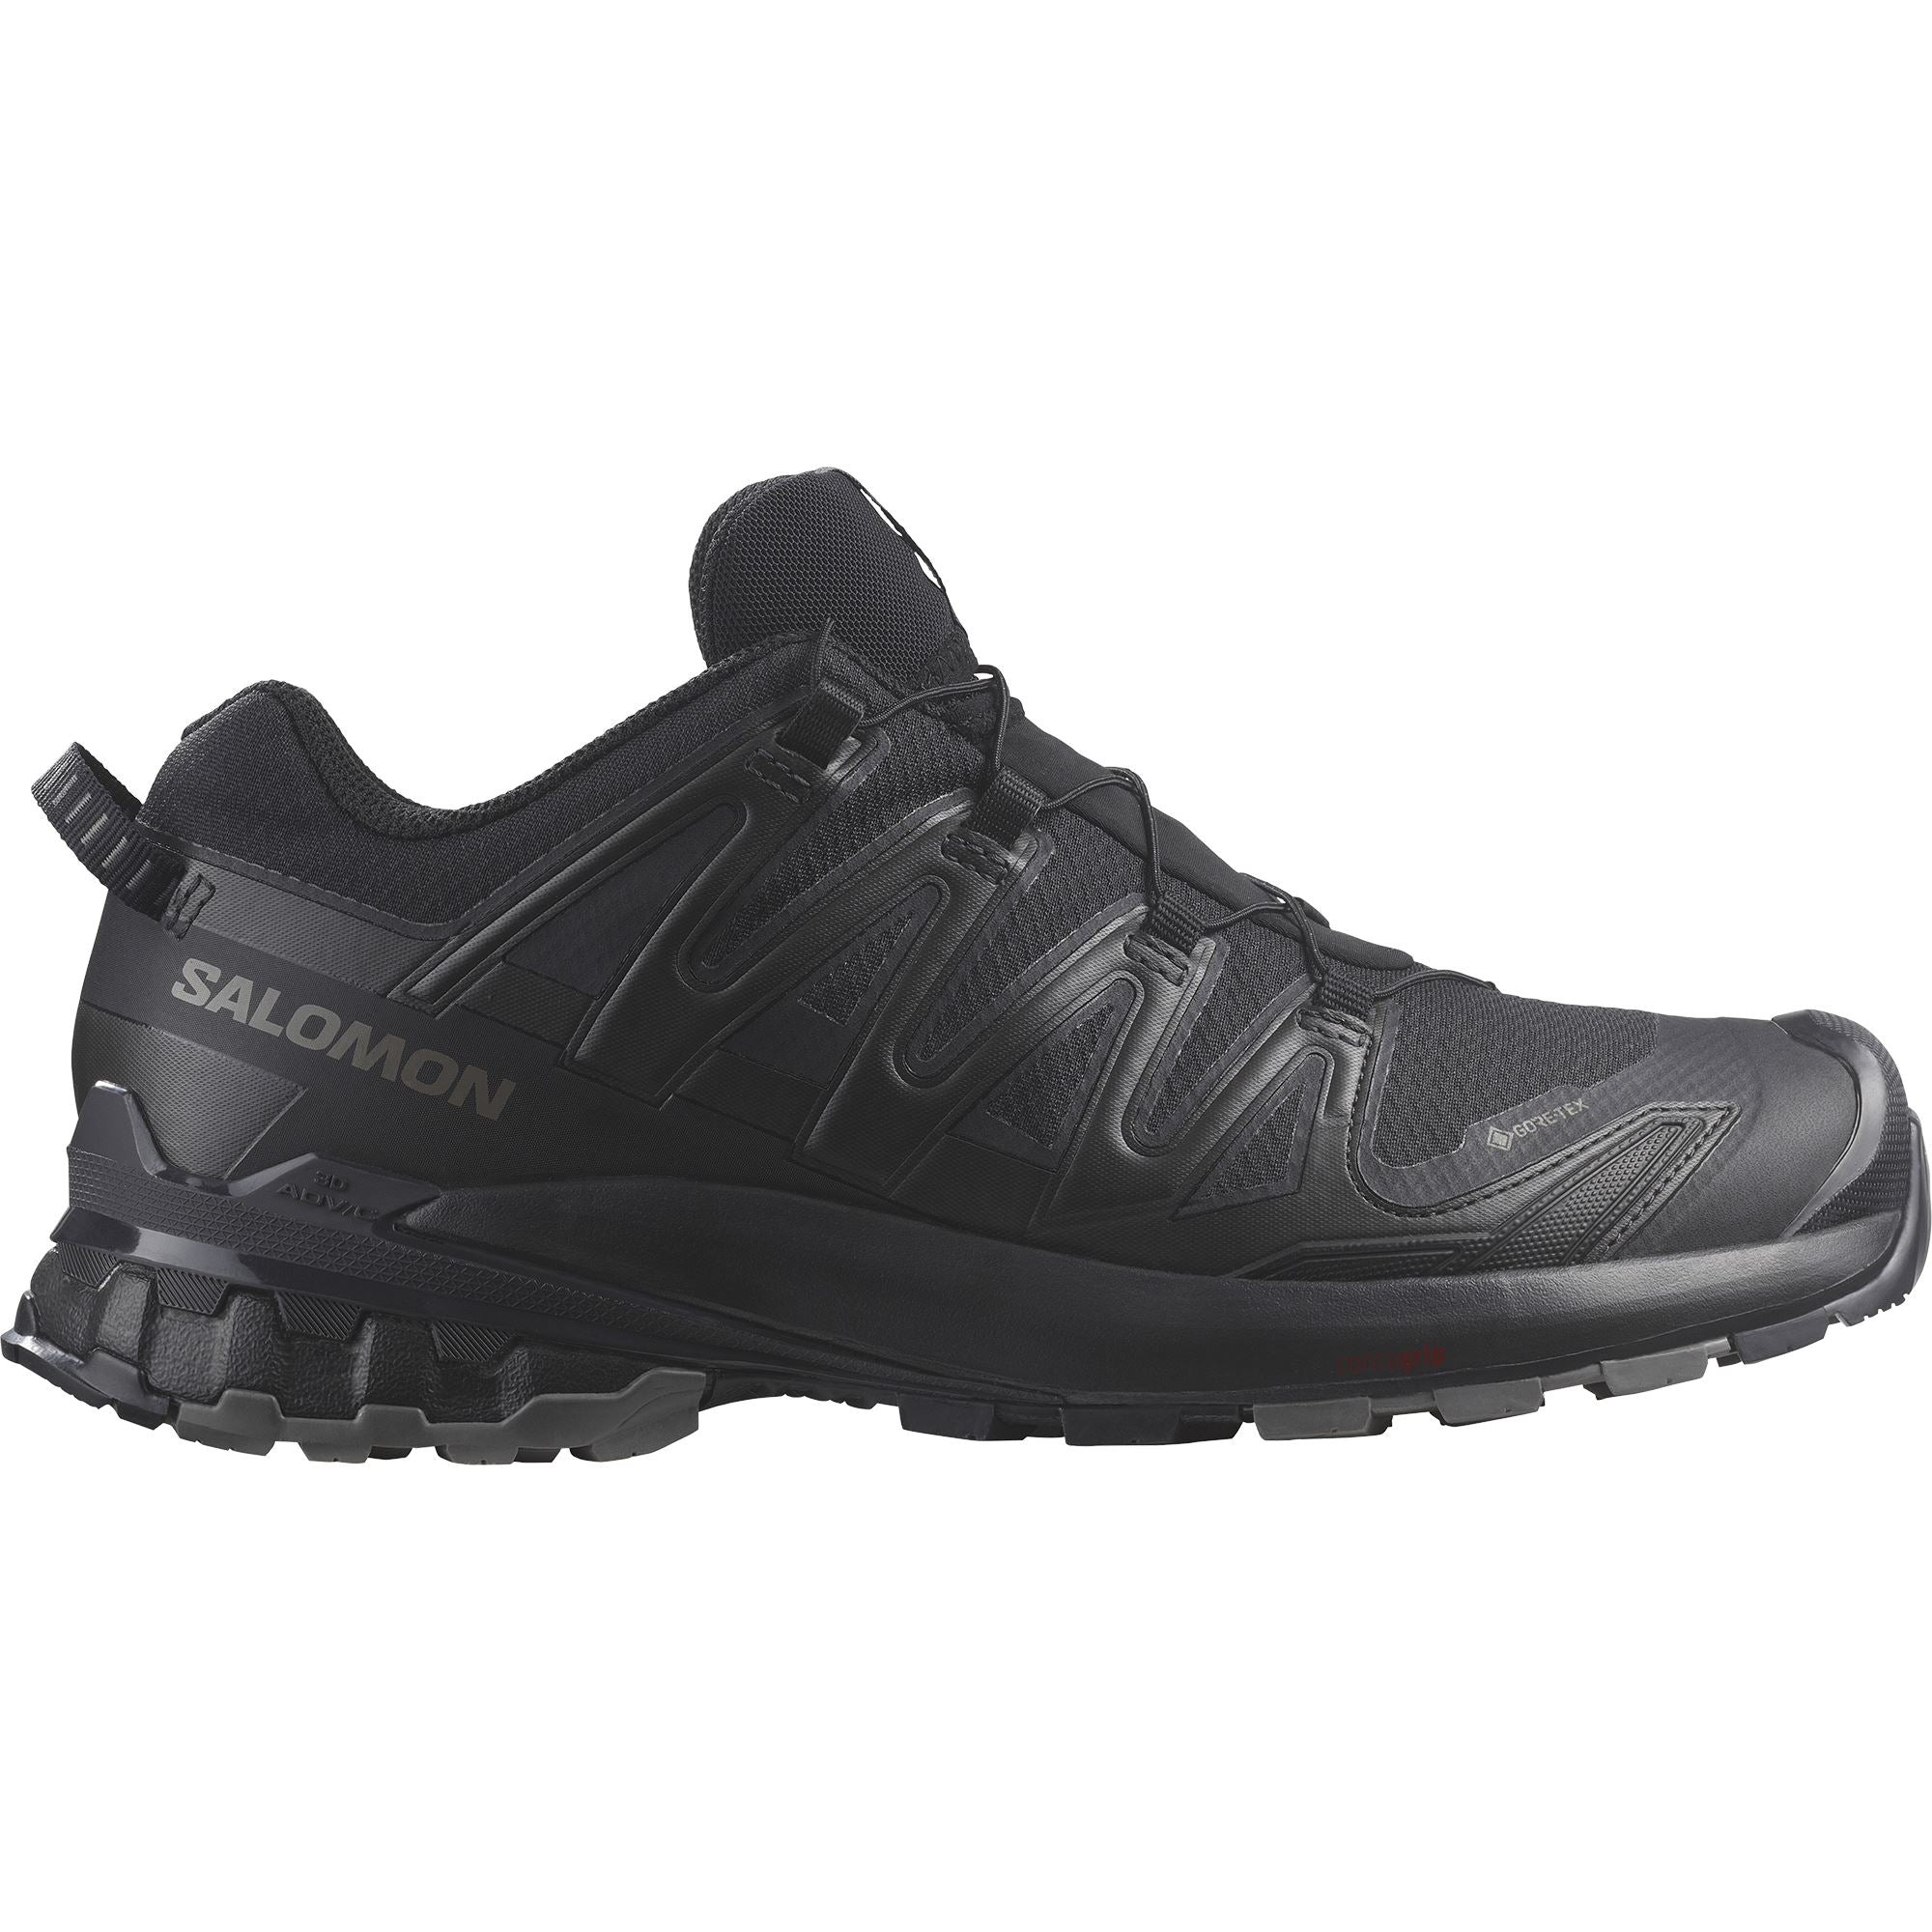 Salomon XA Pro 3D V9 GTX Men's Trail Running Shoes Black/Phantom/Pewter US 8 